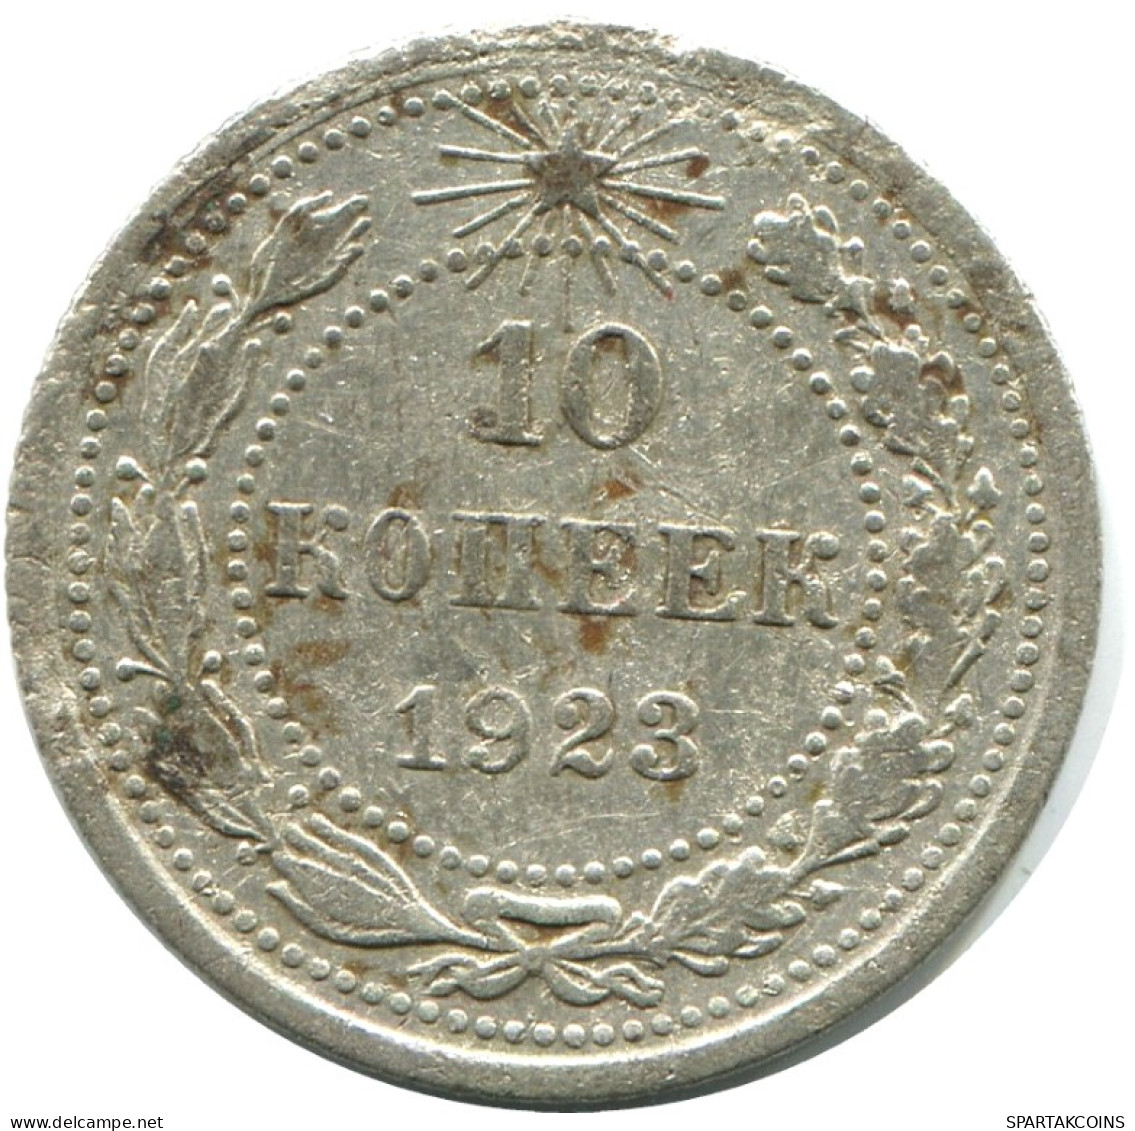 10 KOPEKS 1923 RUSSLAND RUSSIA RSFSR SILBER Münze HIGH GRADE #AE899.4.D.A - Russia